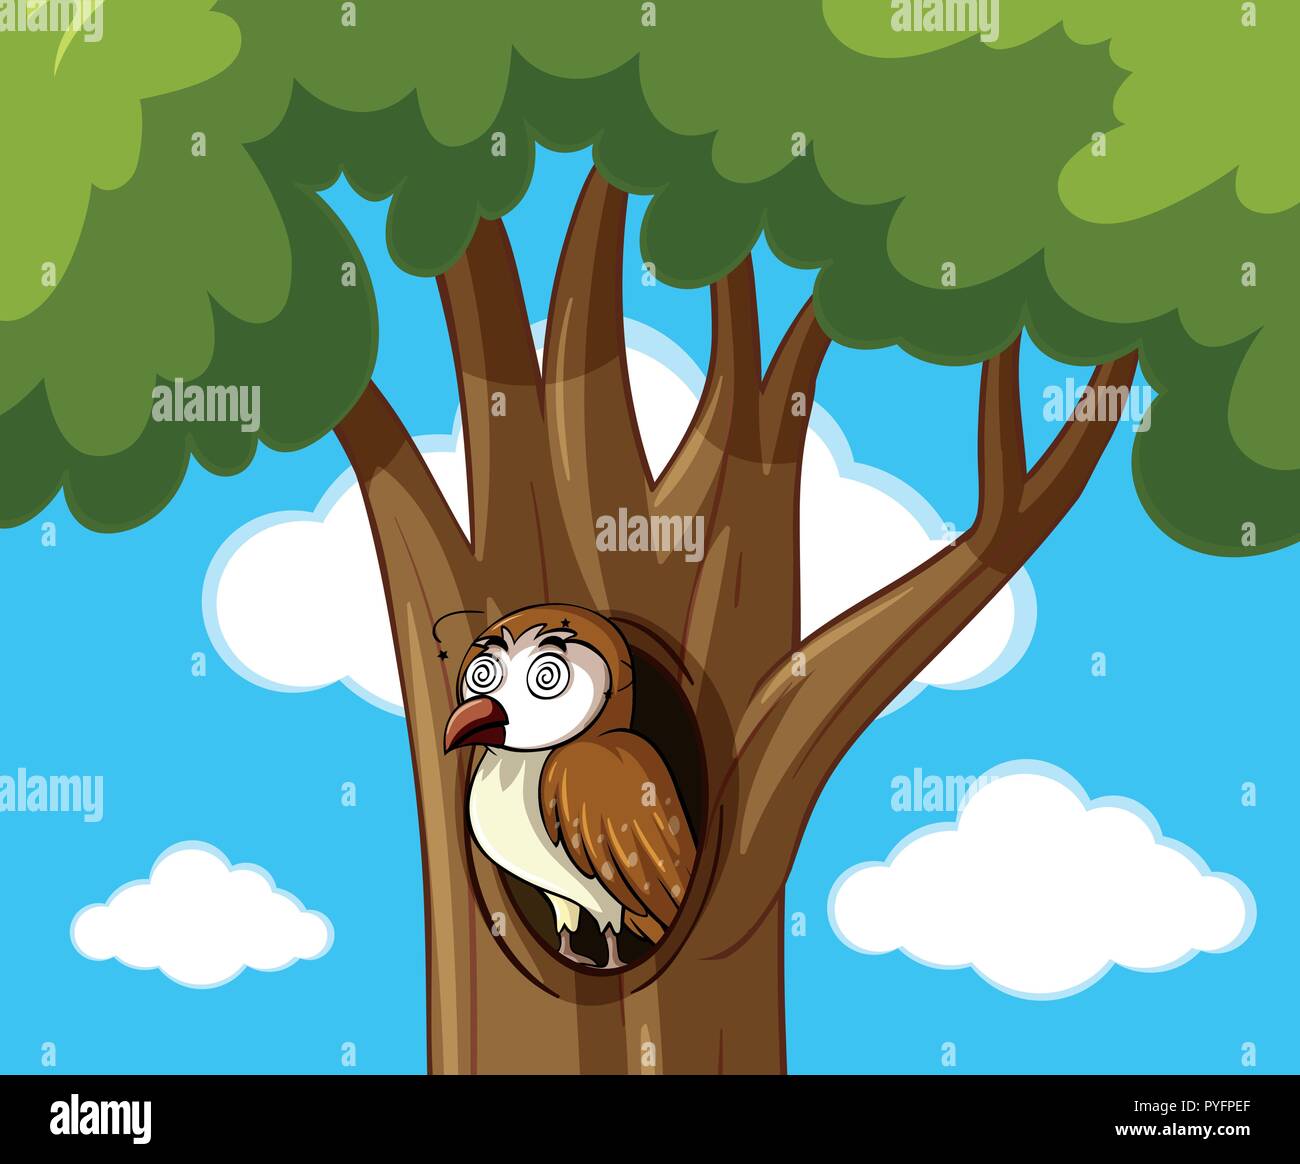 Dizzy owl en ilustración de árbol hueco Ilustración del Vector